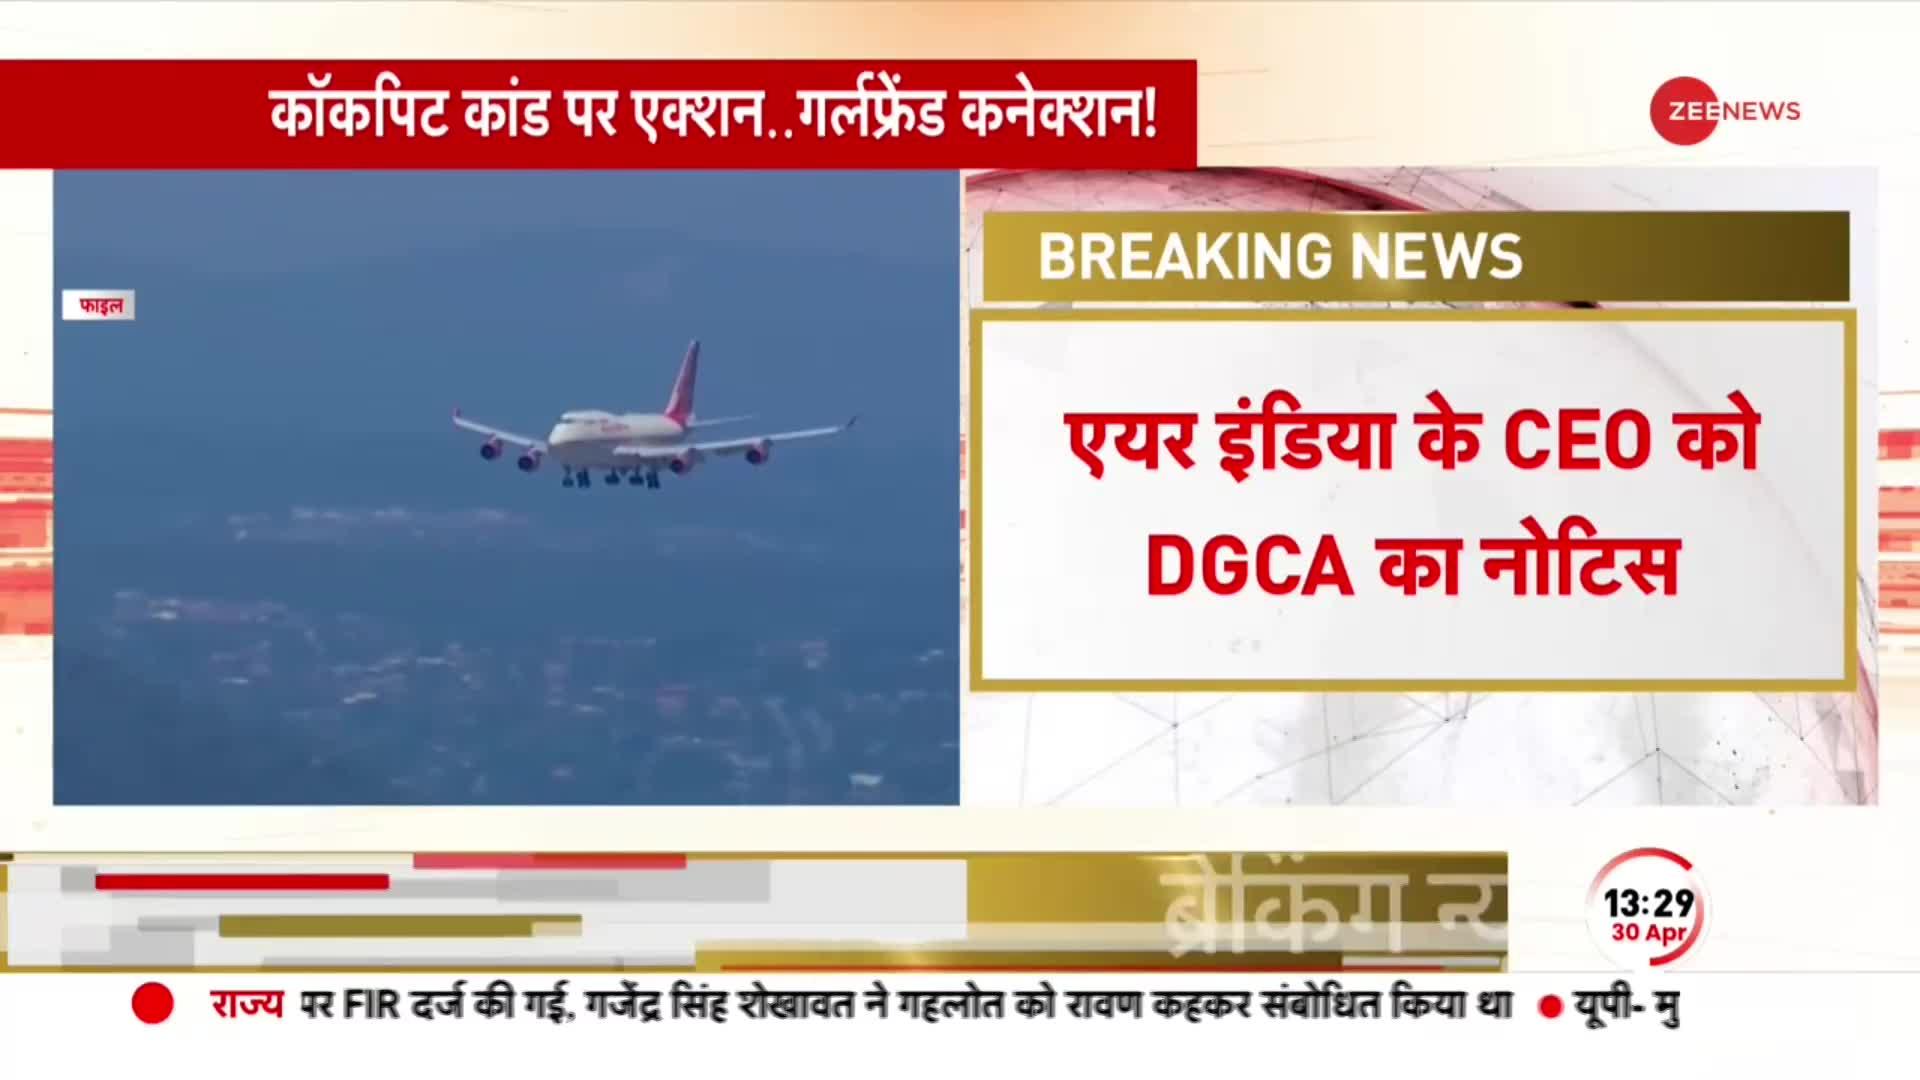 एयर इंडिया के CEO को DGCA का नोटिस, कॉकपिट में महिला मित्र को बुलाने का मामले